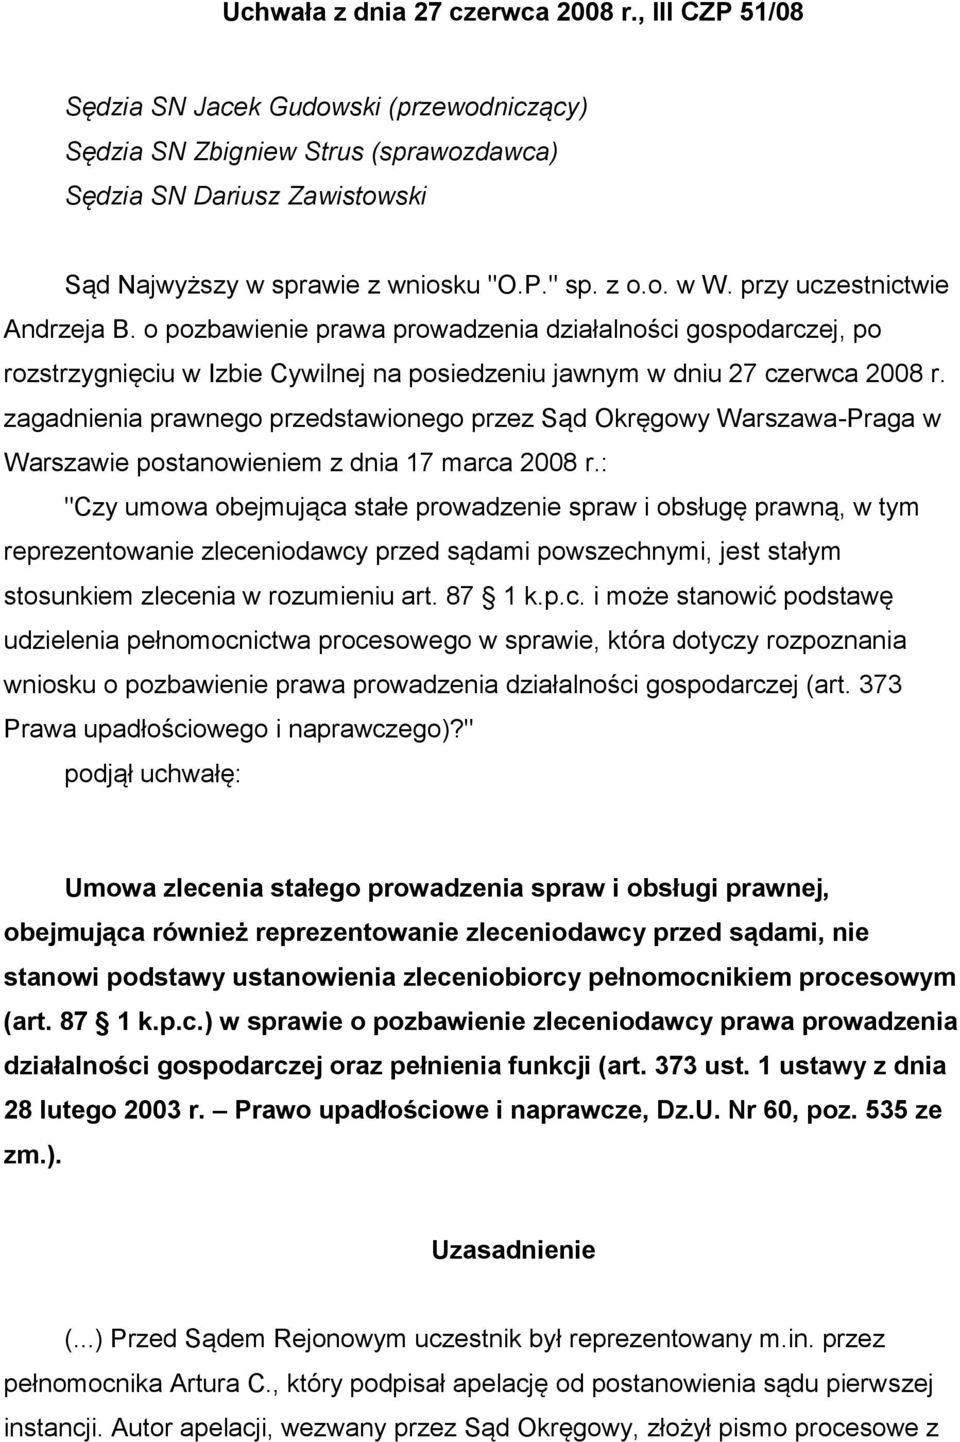 zagadnienia prawnego przedstawionego przez Sąd Okręgowy Warszawa-Praga w Warszawie postanowieniem z dnia 17 marca 2008 r.